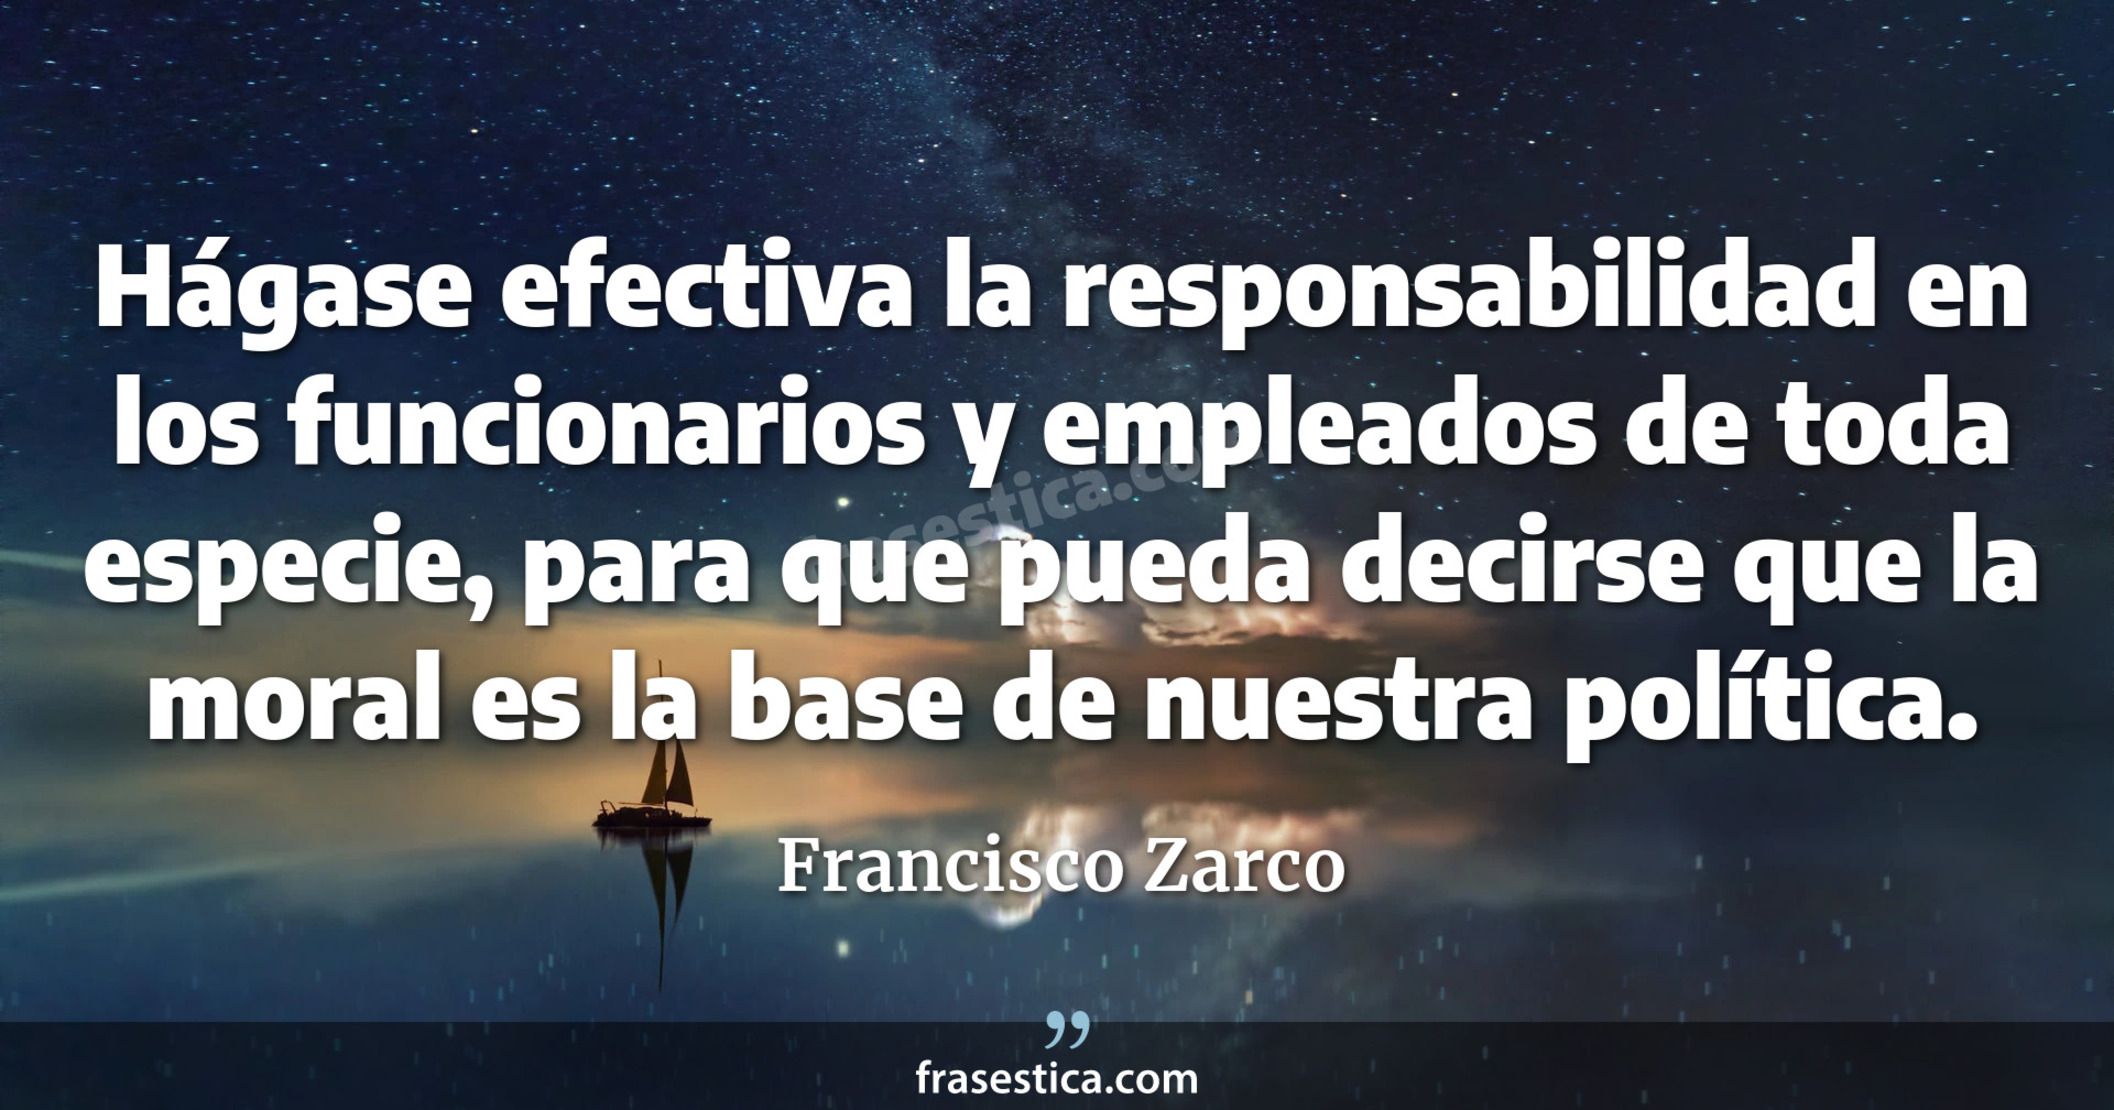 Hágase efectiva la responsabilidad en los funcionarios y empleados de toda especie, para que pueda decirse que la moral es la base de nuestra política. - Francisco Zarco